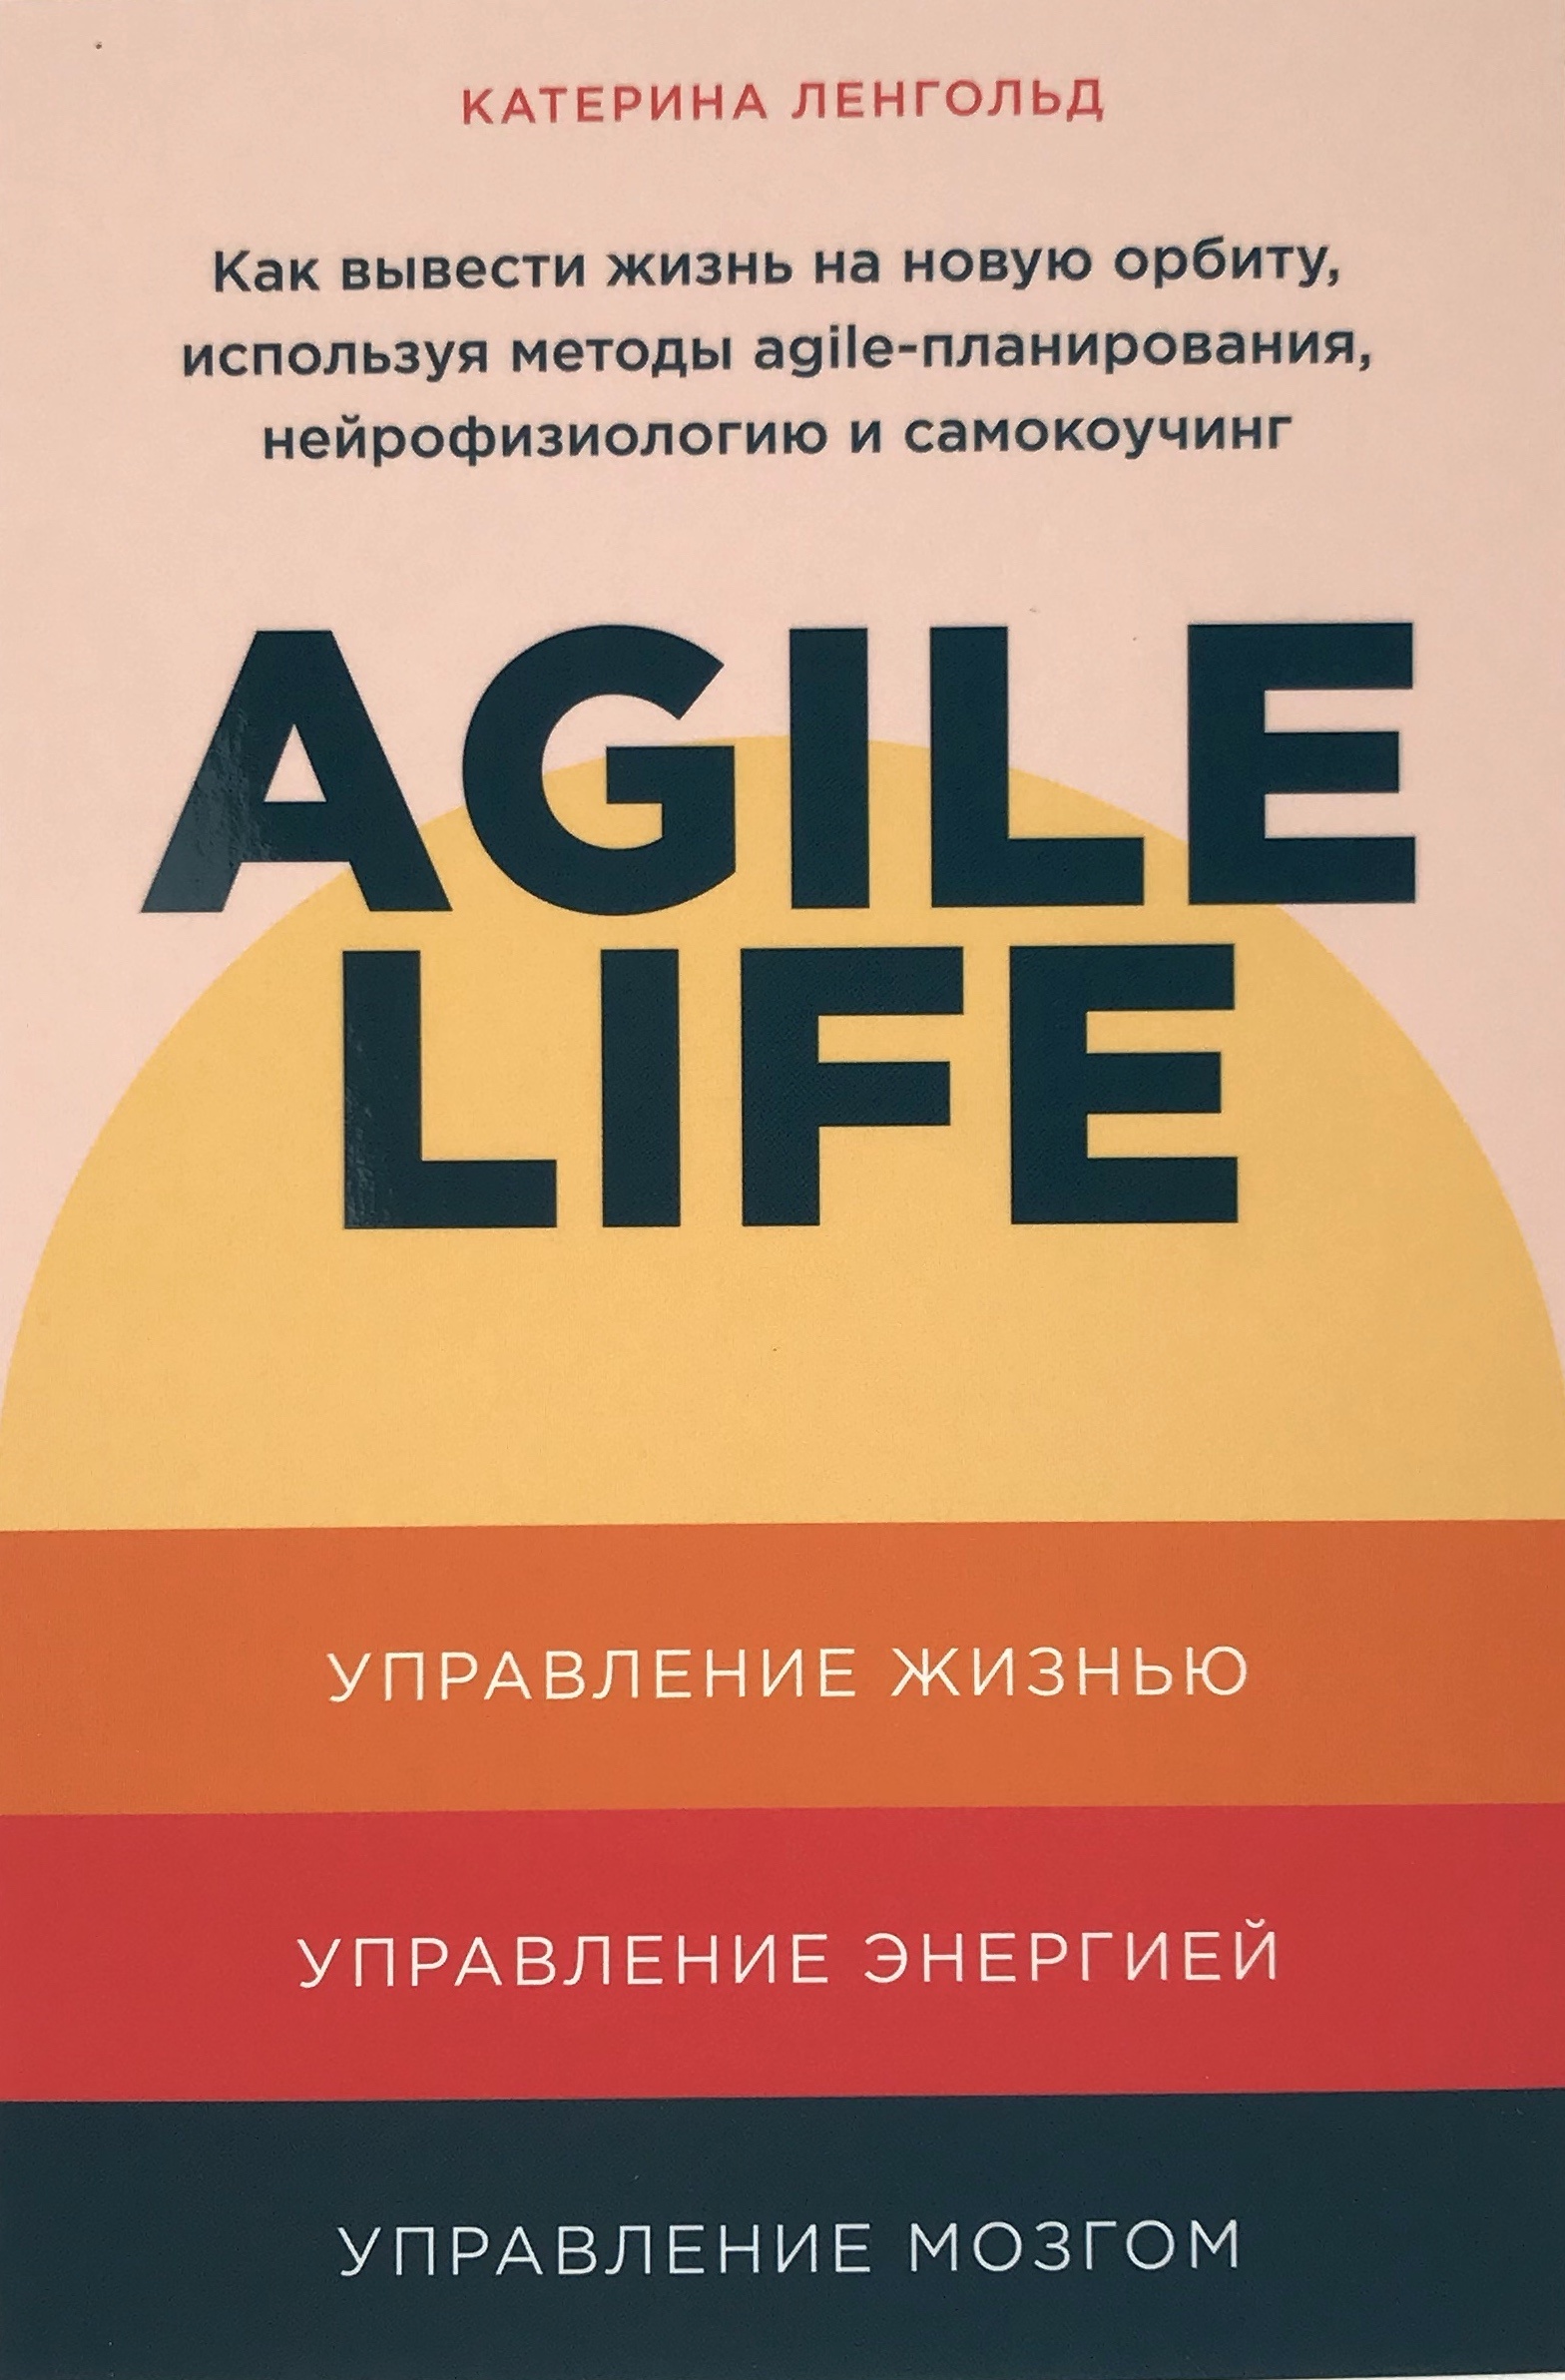 Agile Life. Как вывести жизнь на новую орбиту, используя методы agile-планирования, нейрофизиологию и самокоучинг. Автор — Катерина Ленгольд. 